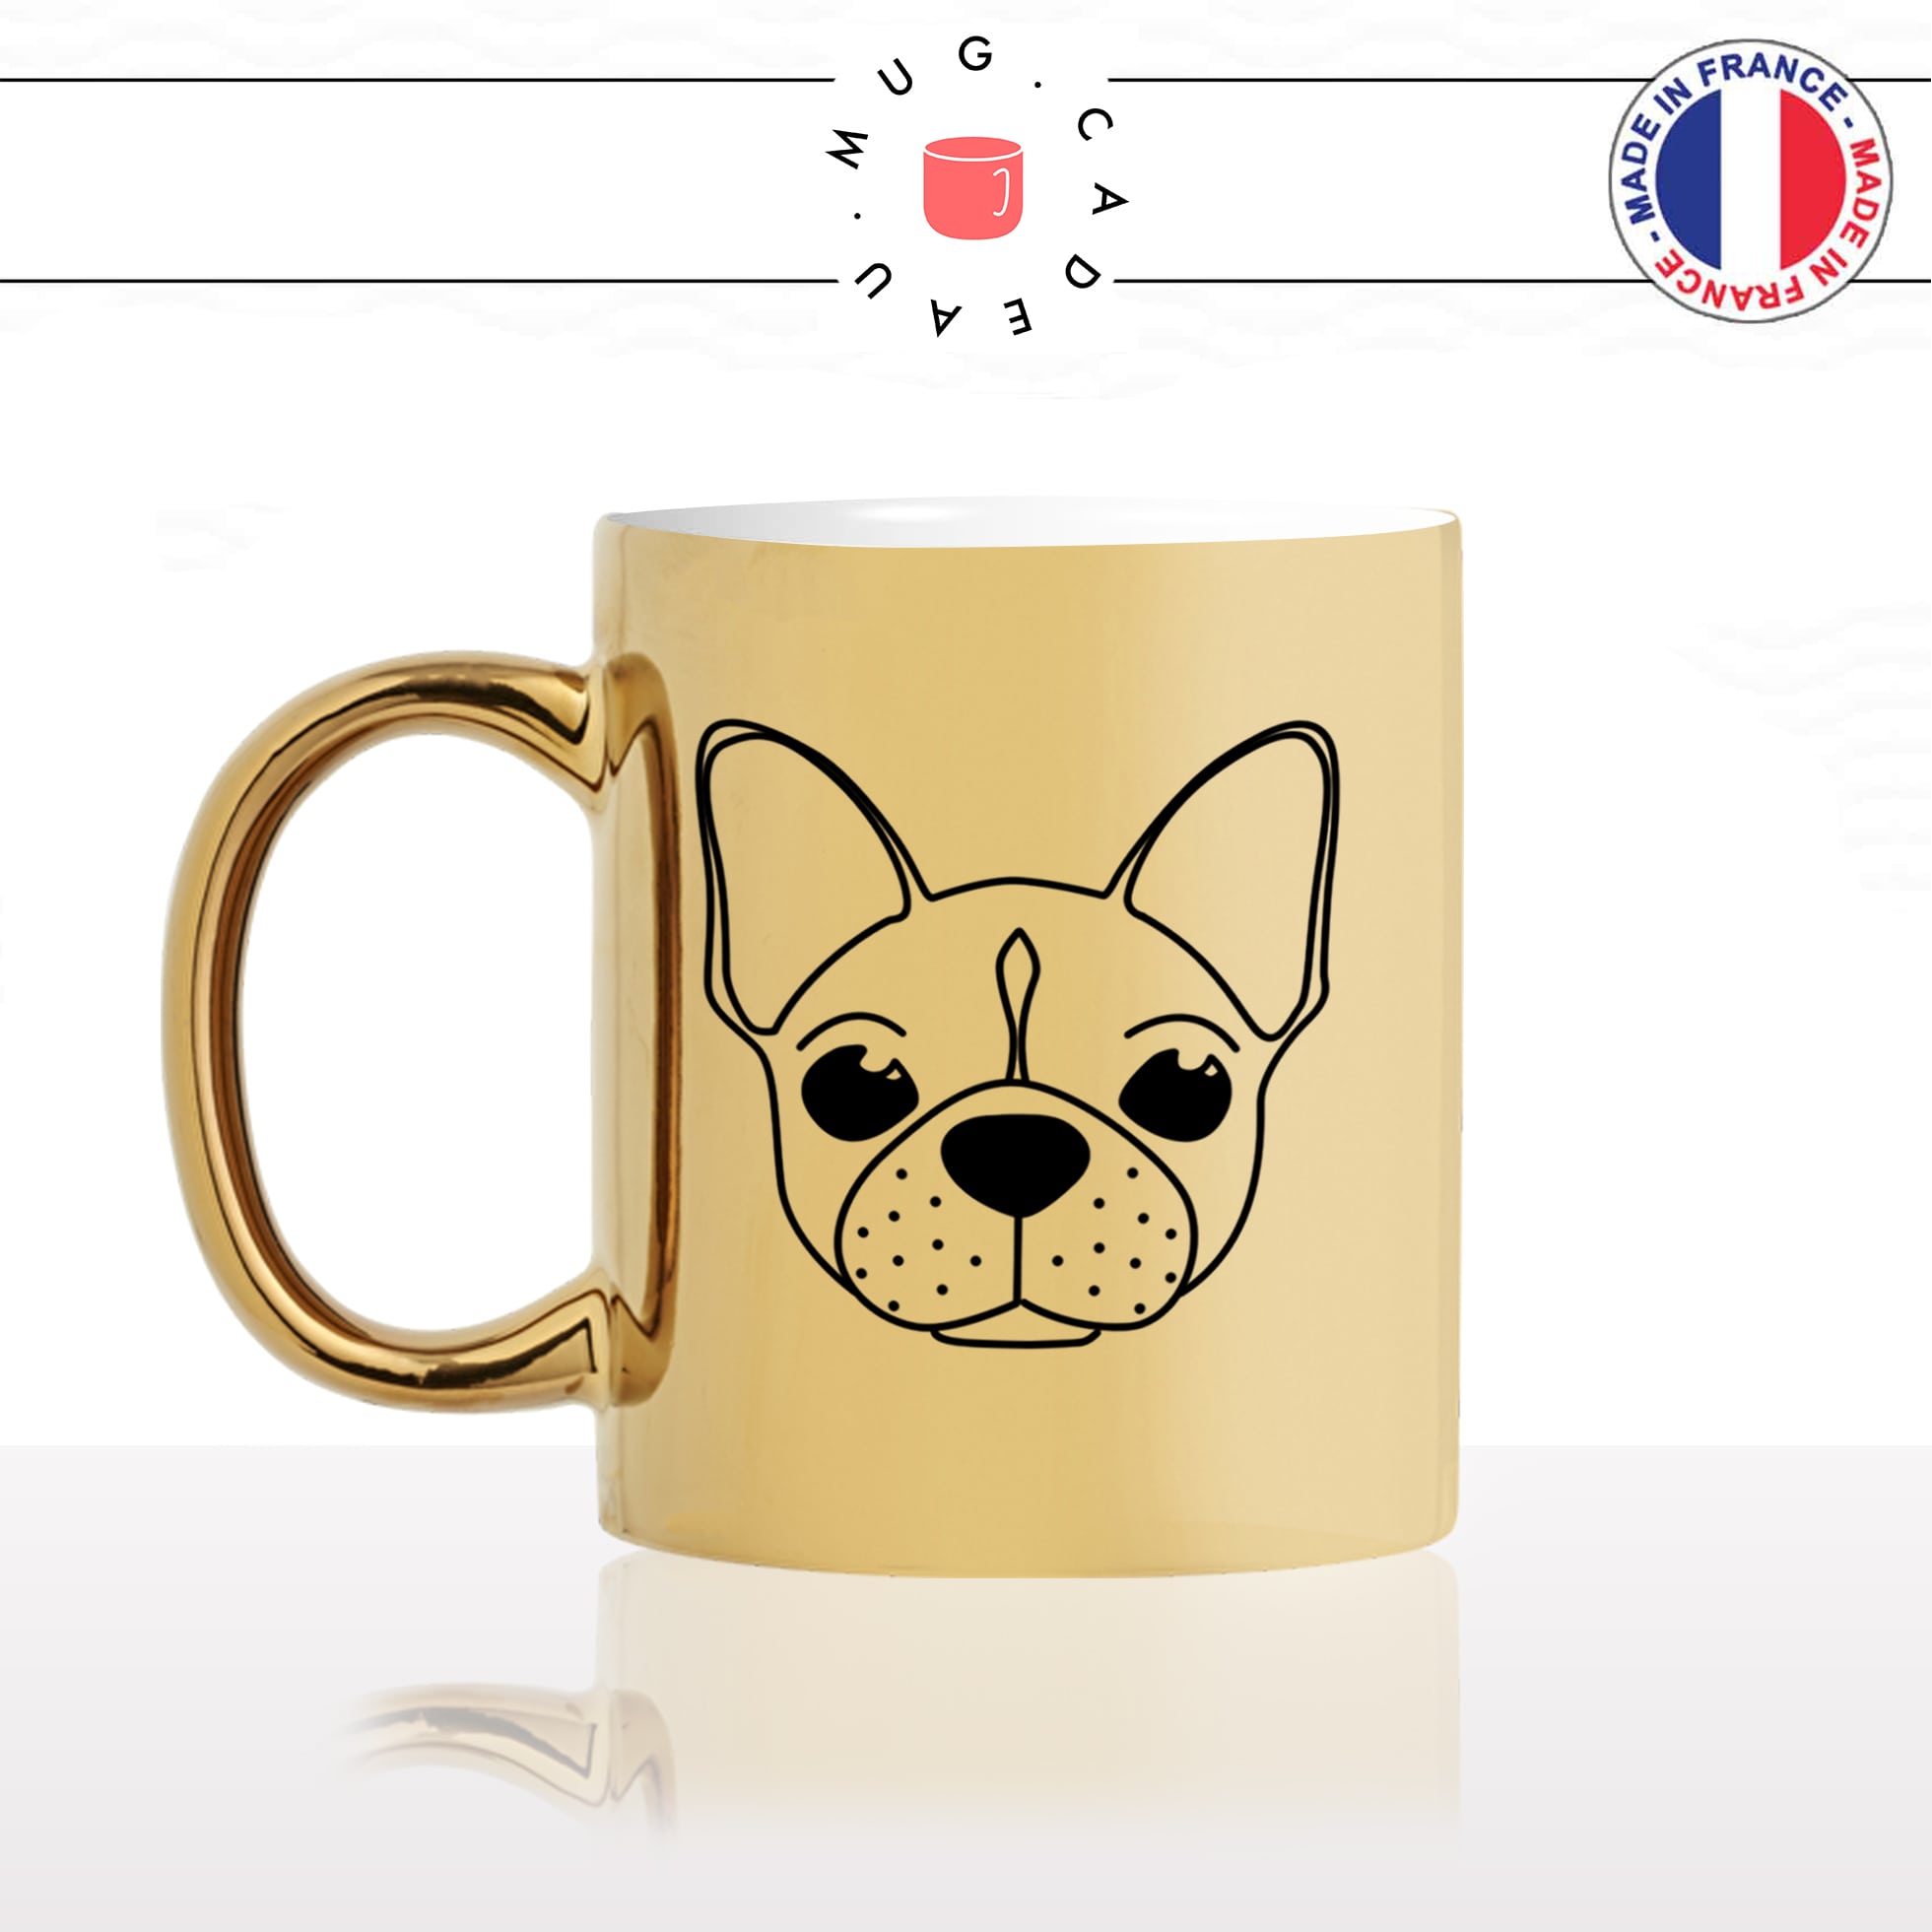 mug-tasse-or-doré-tete-de-chien-race-bulldog-pug-amour-mignon-animal-chiot-noir-fun-café-thé-idée-cadeau-original-personnalisé-gold-min